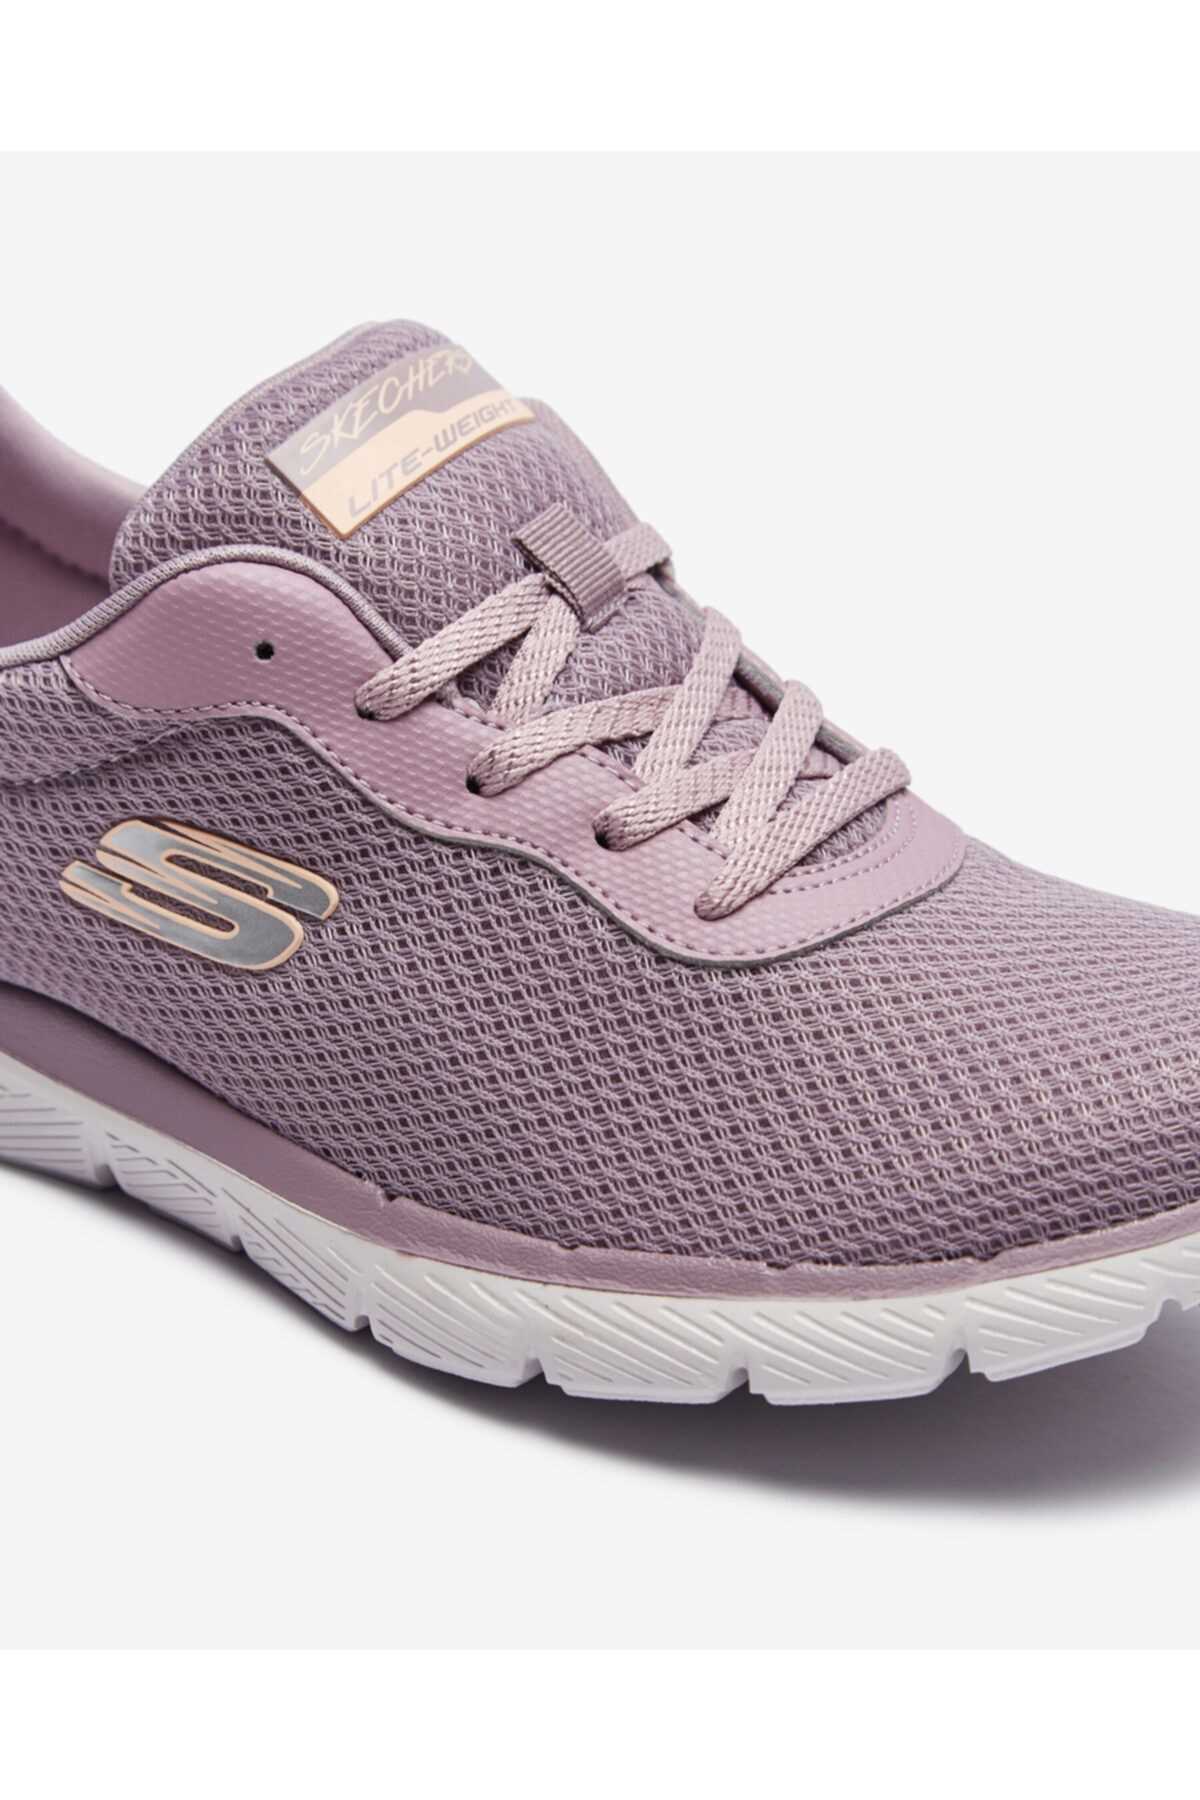 کفش پیاده روی زنانه طرح جدید برند SKECHERS رنگ بنفش کد ty123739604